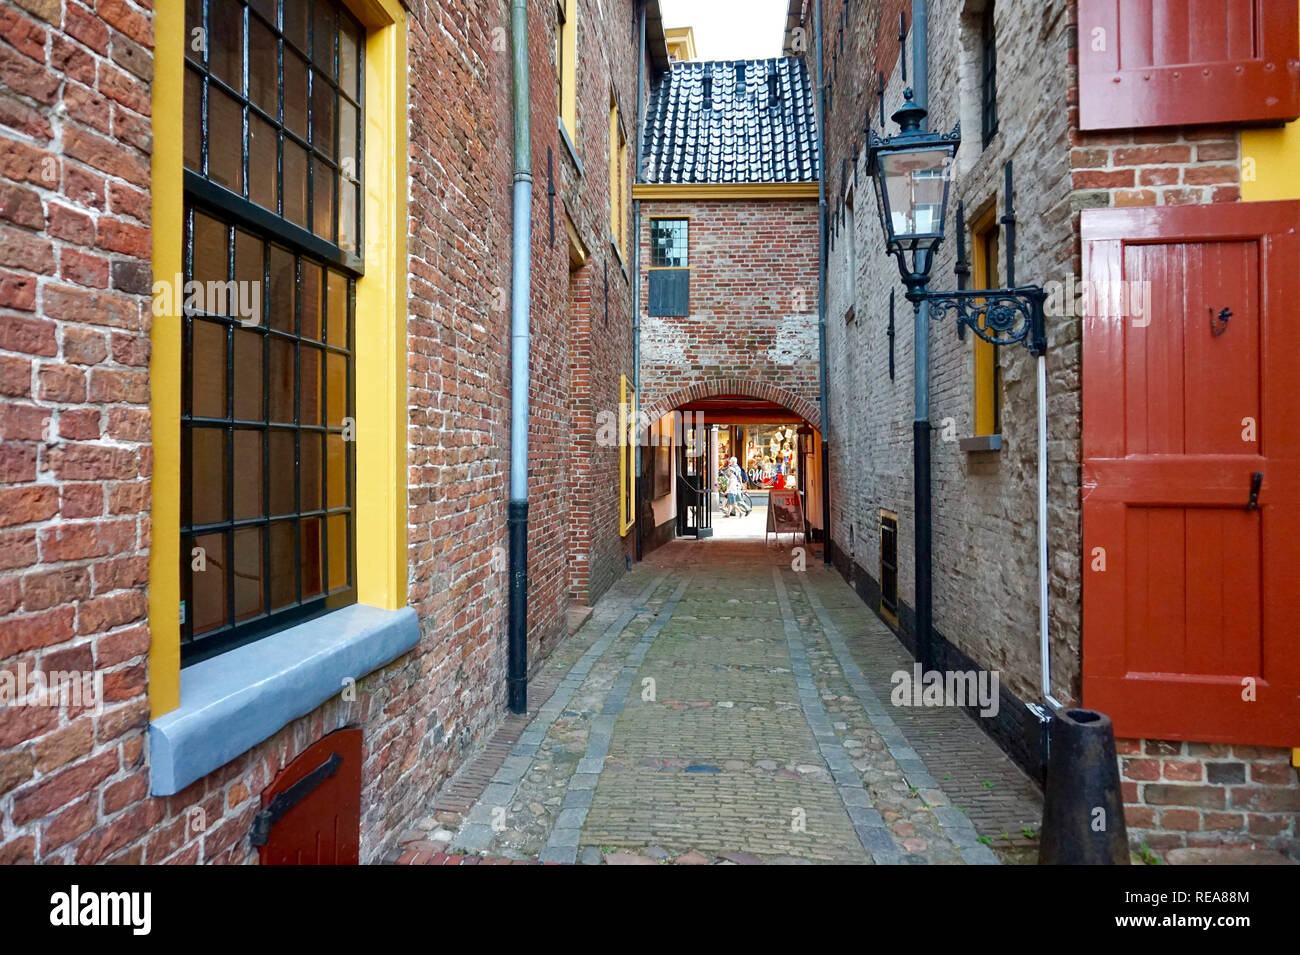 Groningen, Niederlande: restaurierte mittelalterliche Gebäude in Europa, mit hellen roten und gelben trimmen. Alten Ziegel Straße Gasse mit Laterne und Bügeleisen frame Stockfoto